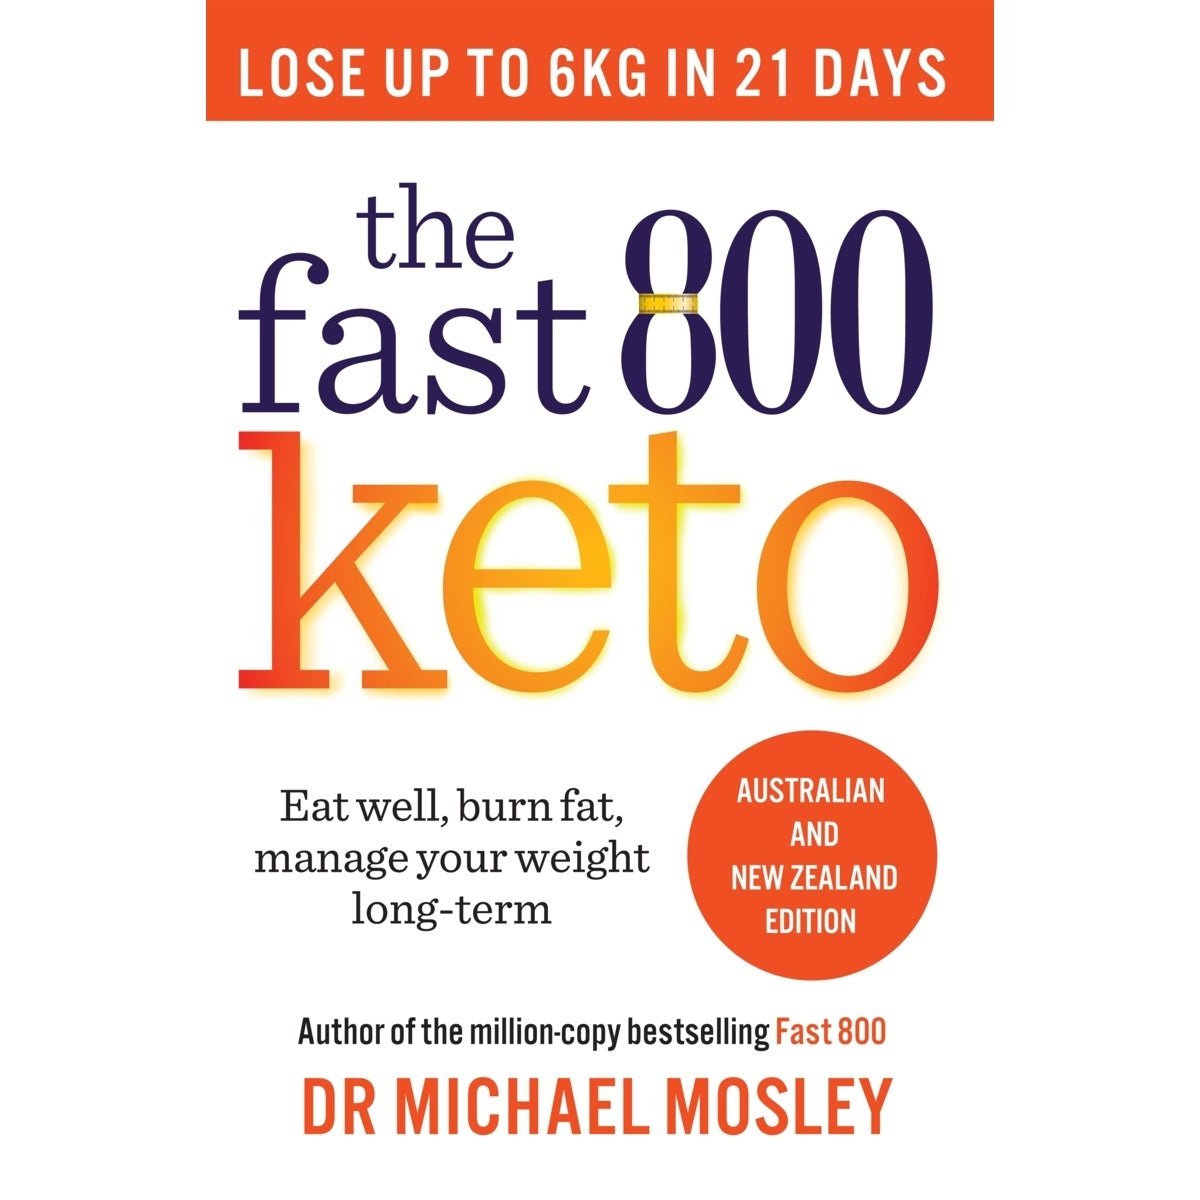 Buy The Fast 800 Keto Diet Book By Dr Michael Mosley Yo Keto Australia